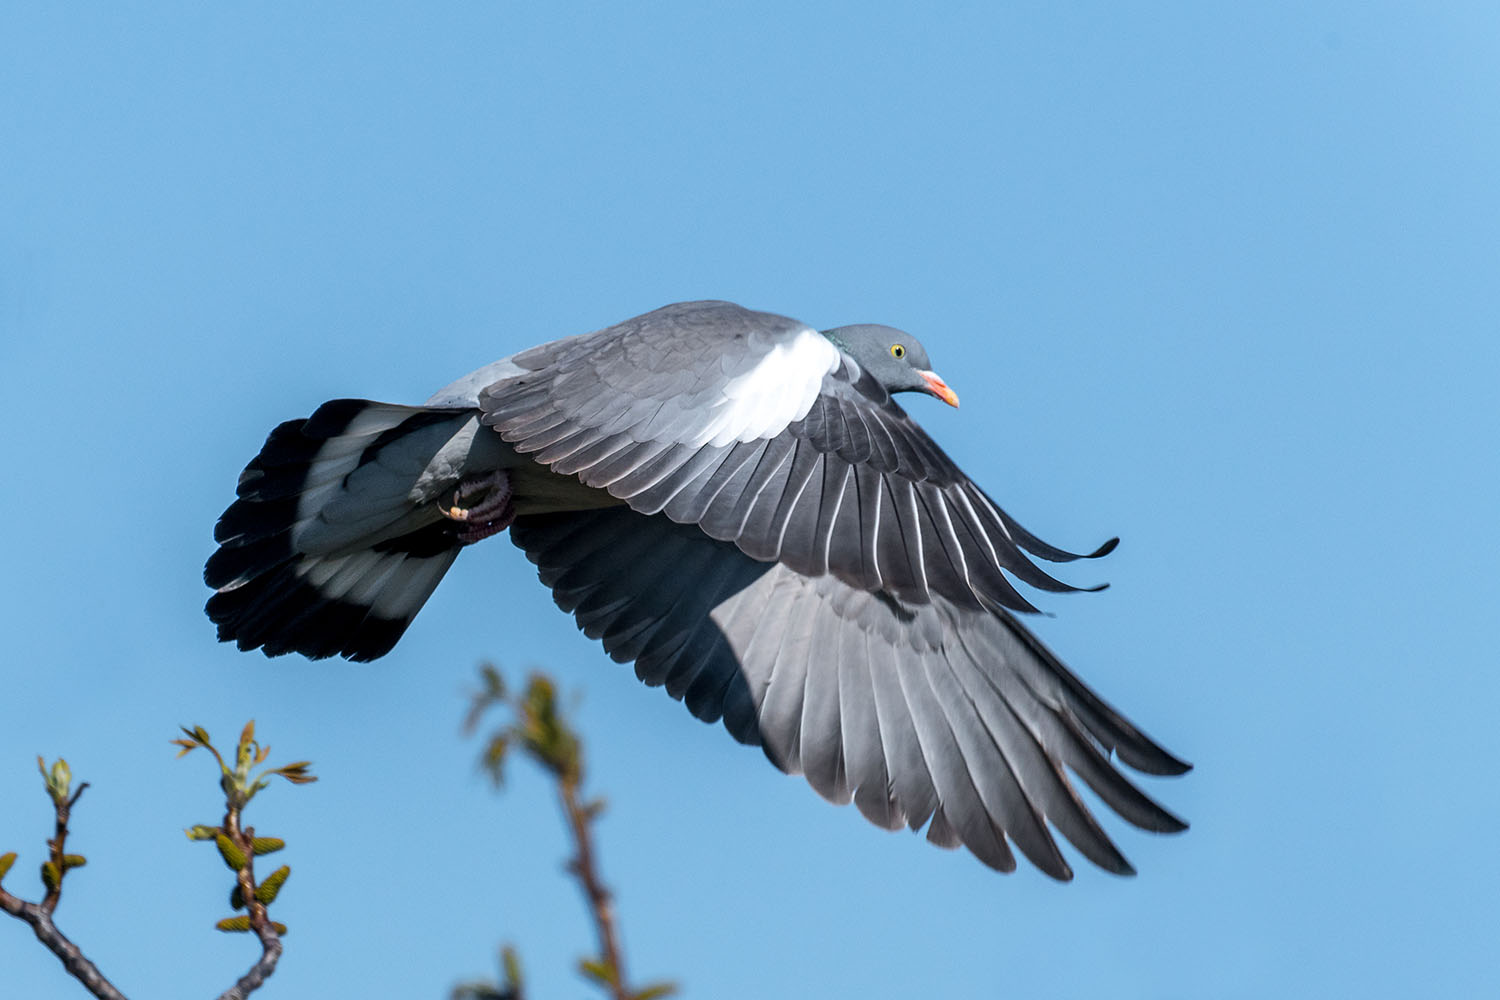 Wood pigeon flying in blue sky